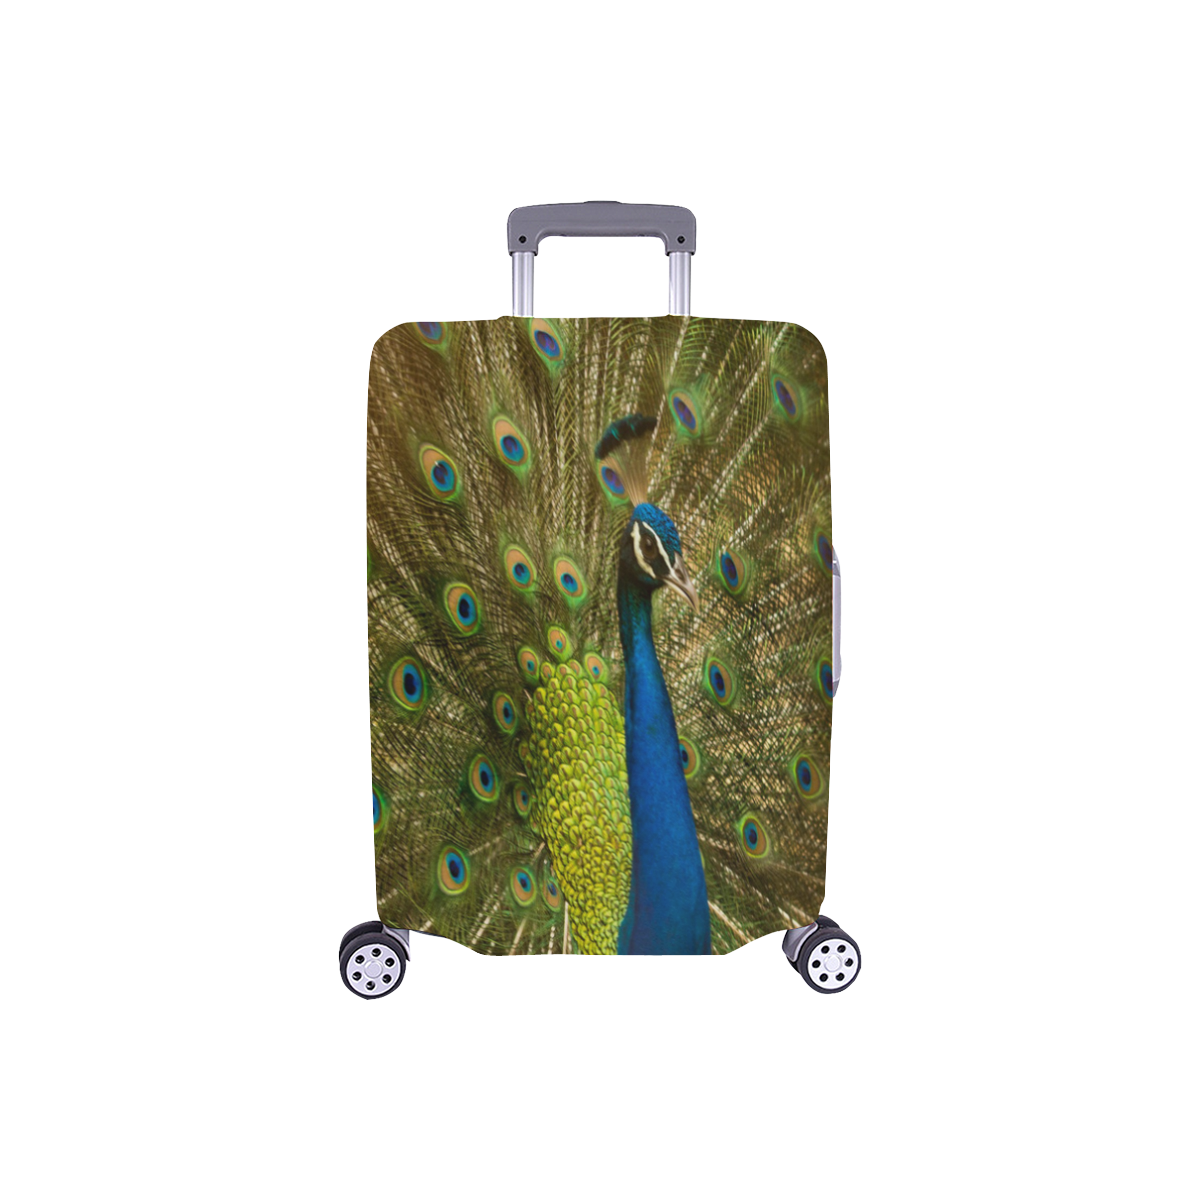 Brilliant Peacock Luggage Cover/Small 18"-21"